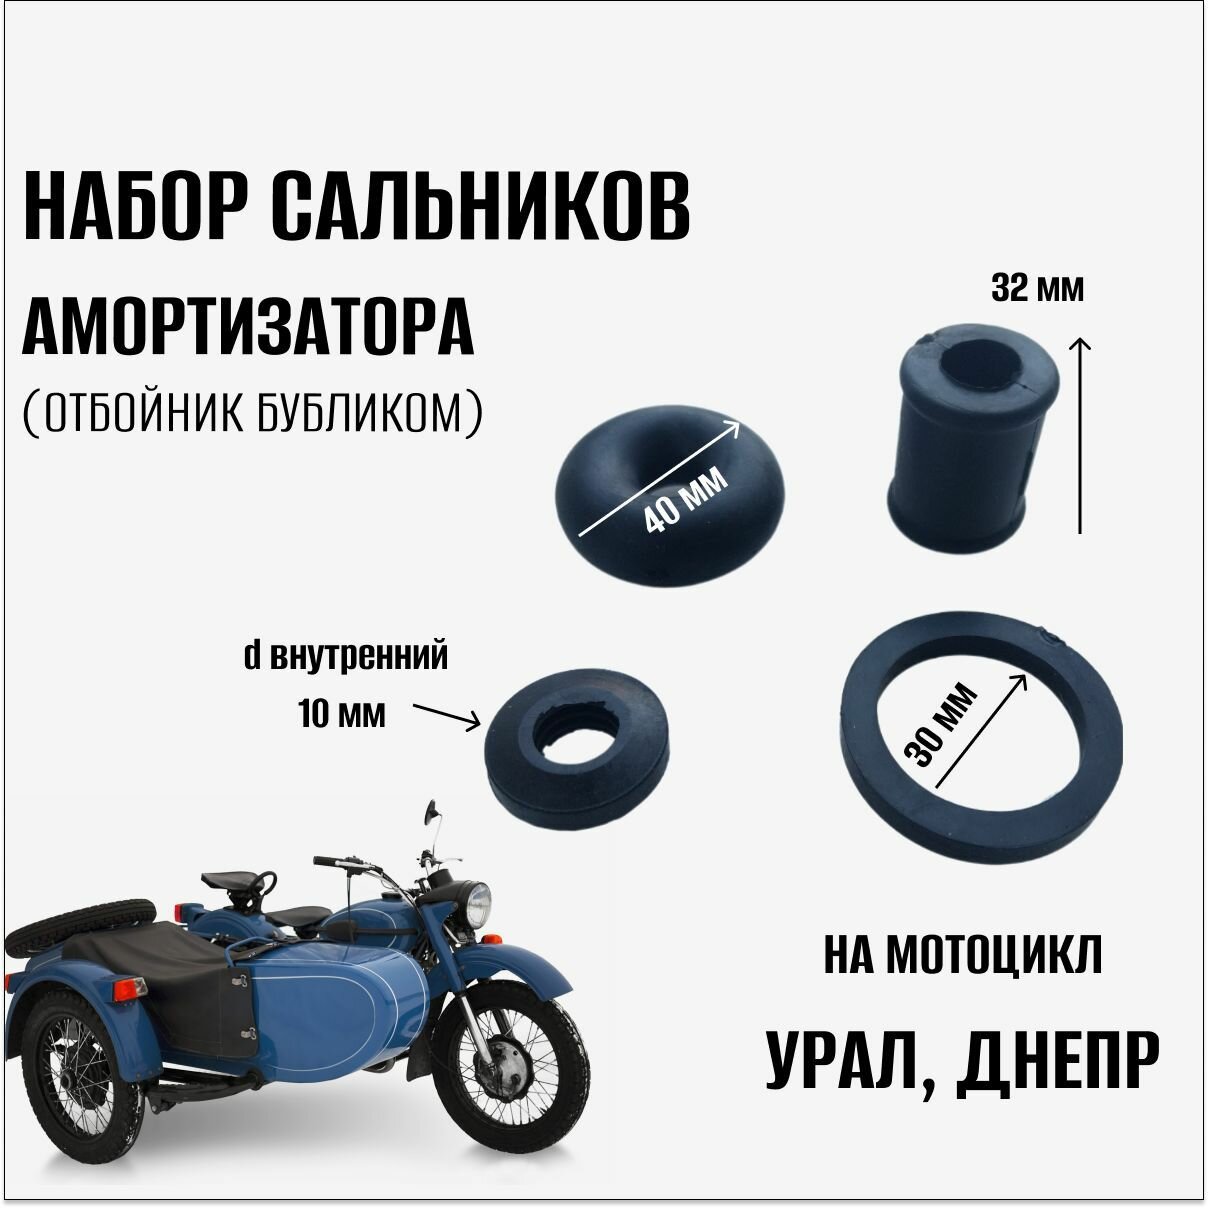 Набор сальников амортизатора на мотоцикл Урал Днепр (отбойник бубликом)